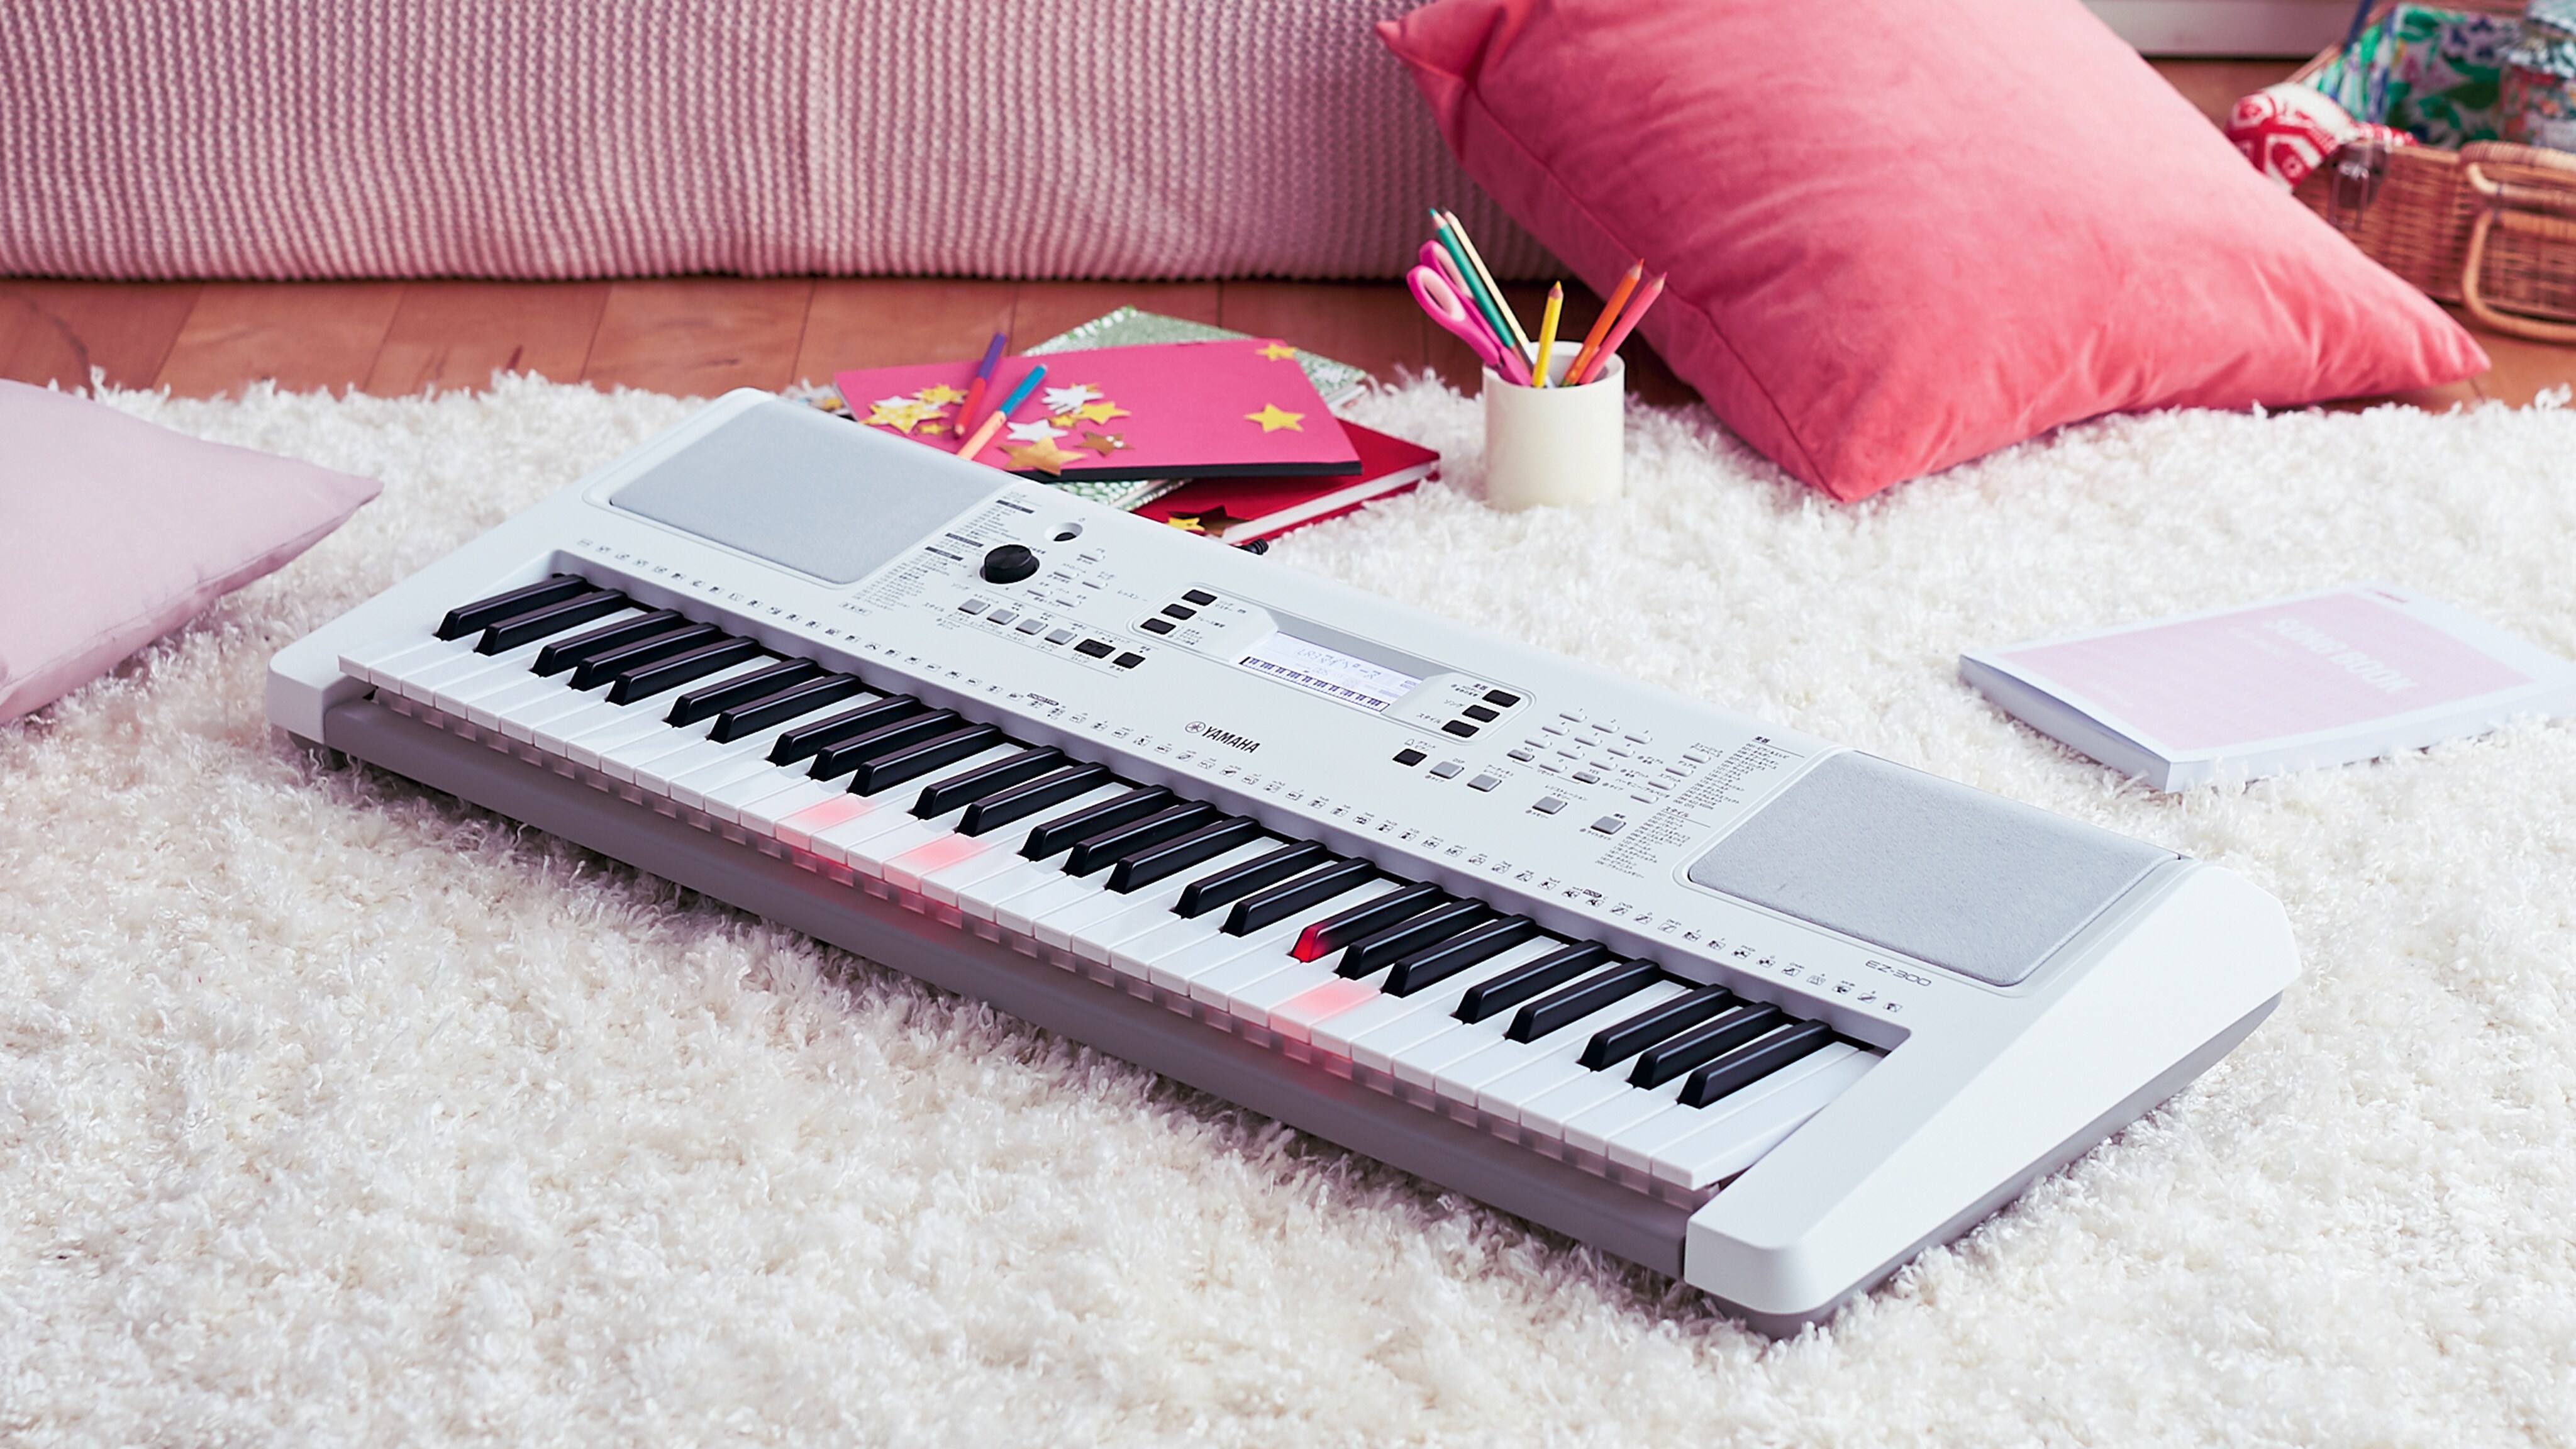 YAMAHA PSR-S670 キーボード 電子ピアノ - 鍵盤楽器